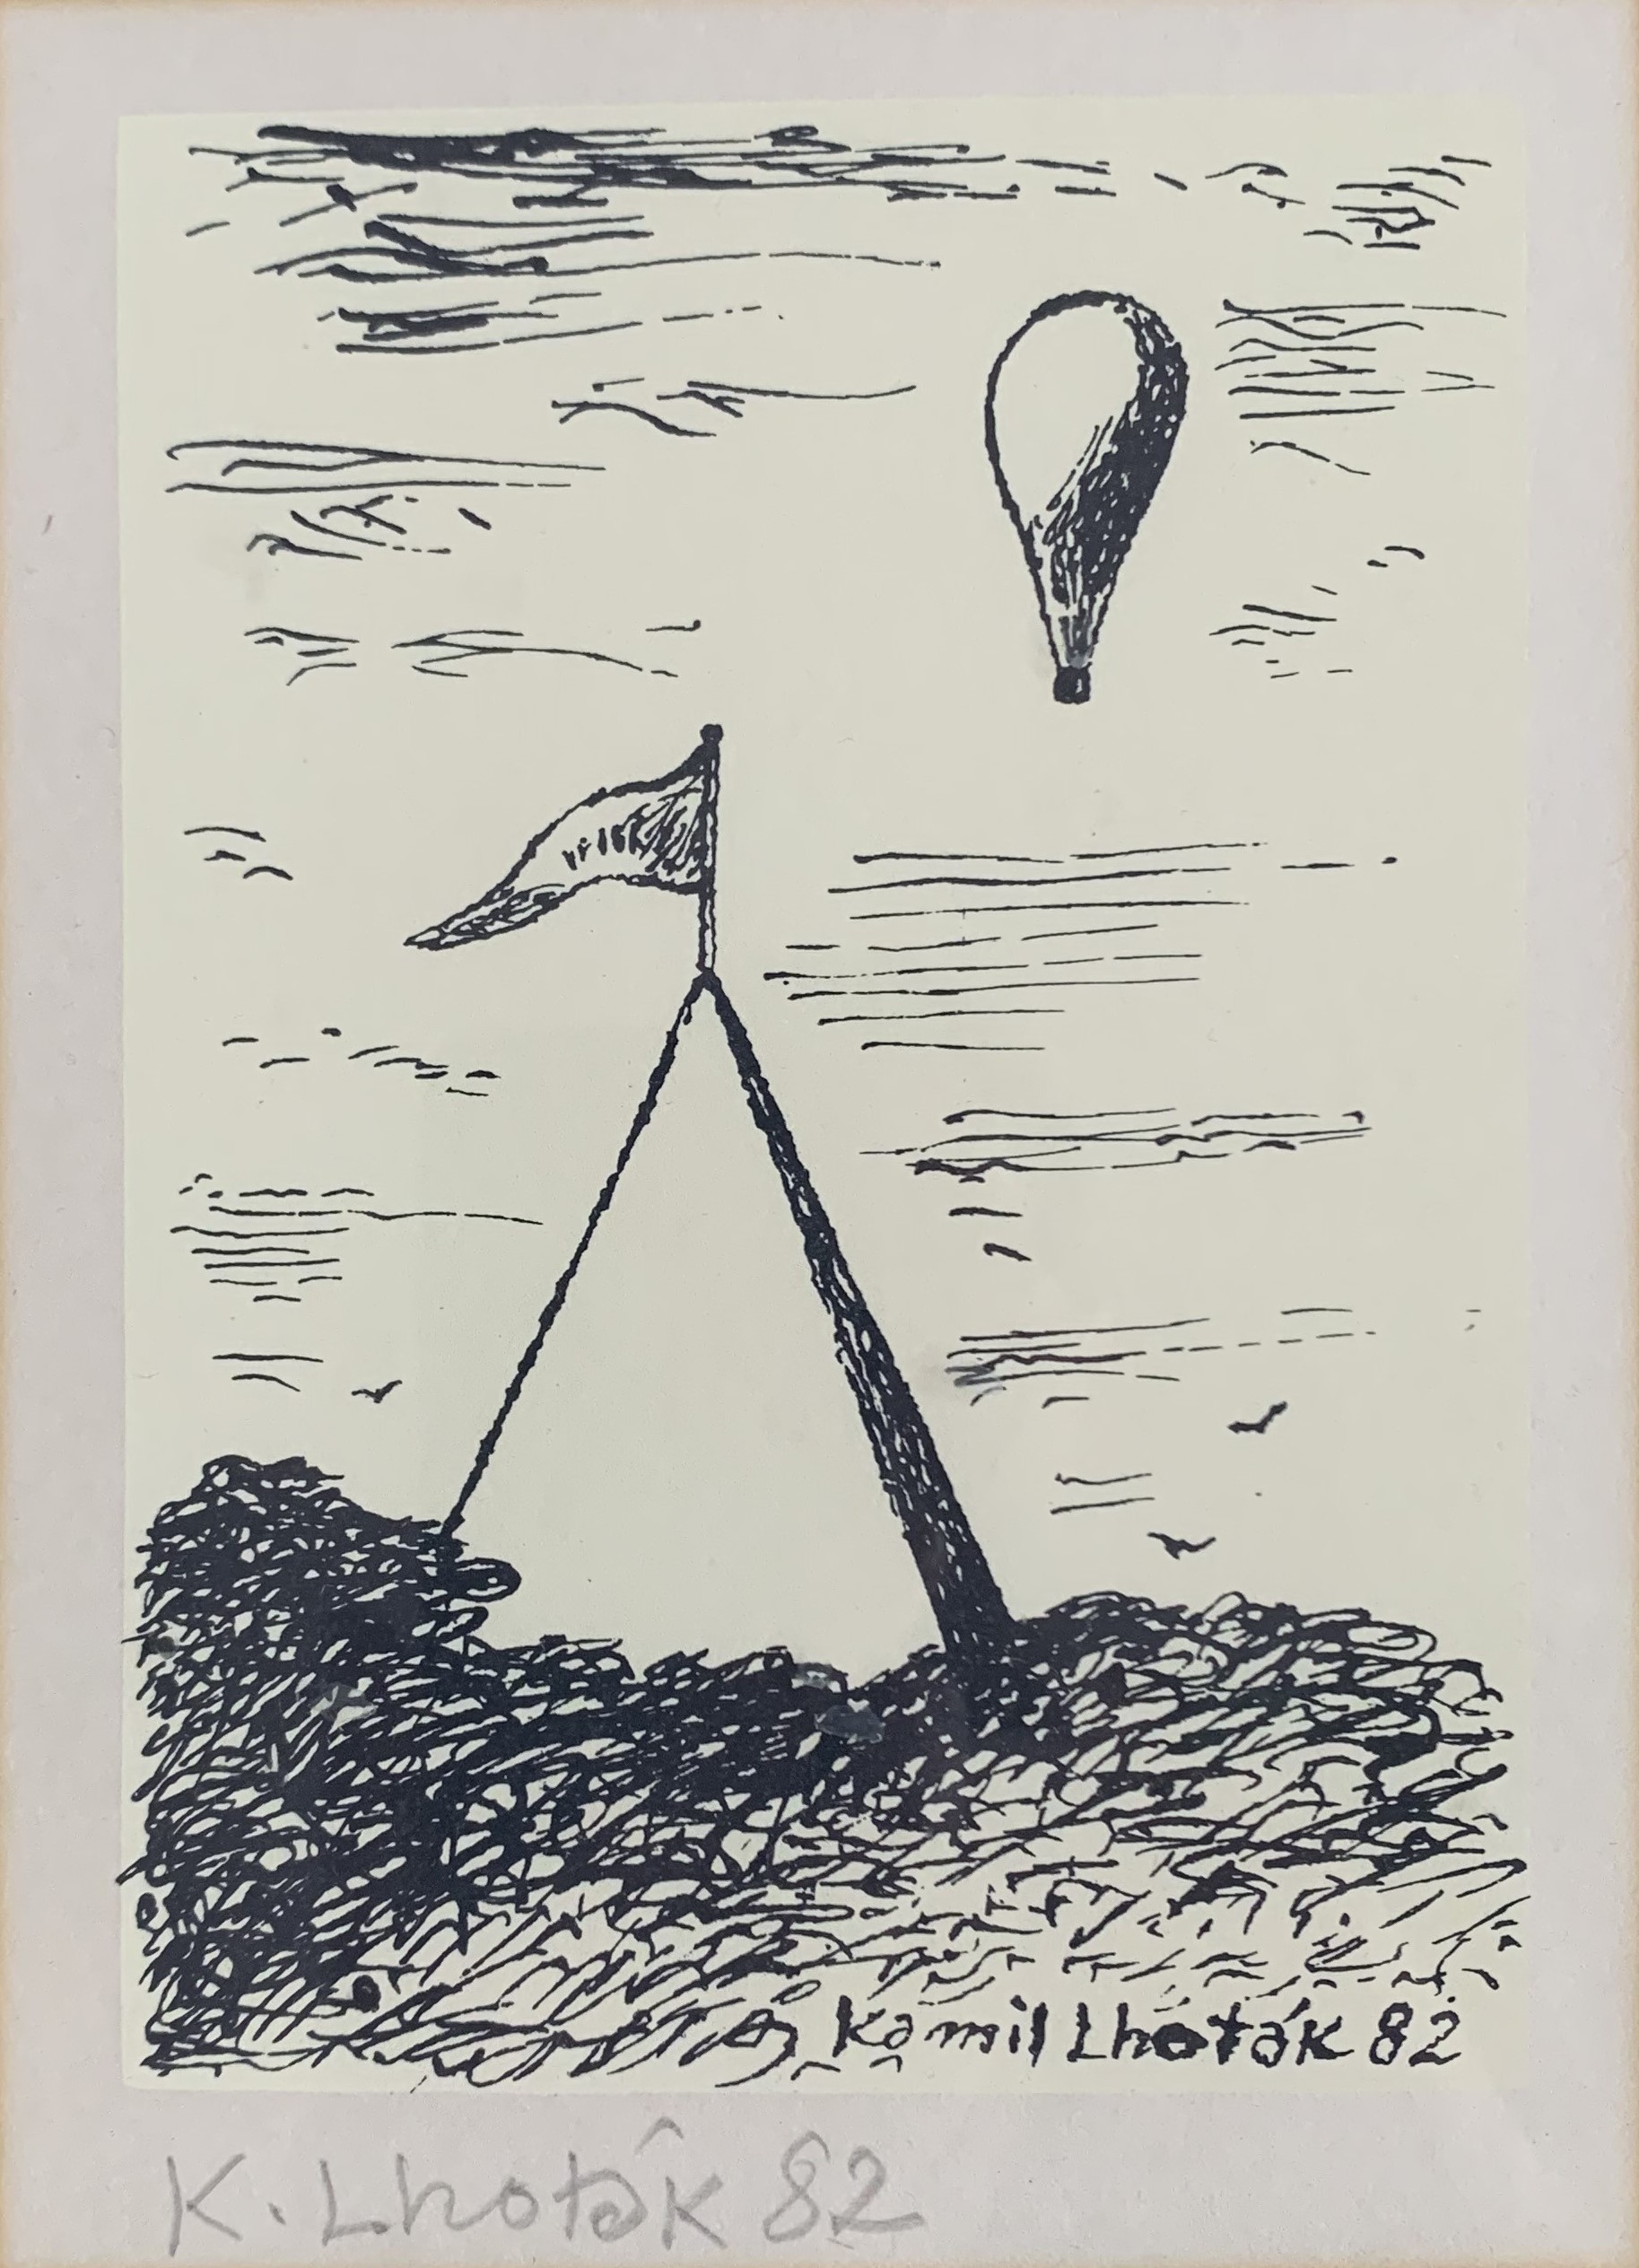 Kamil Lhoták - Život balonu, 1982, serigrafie